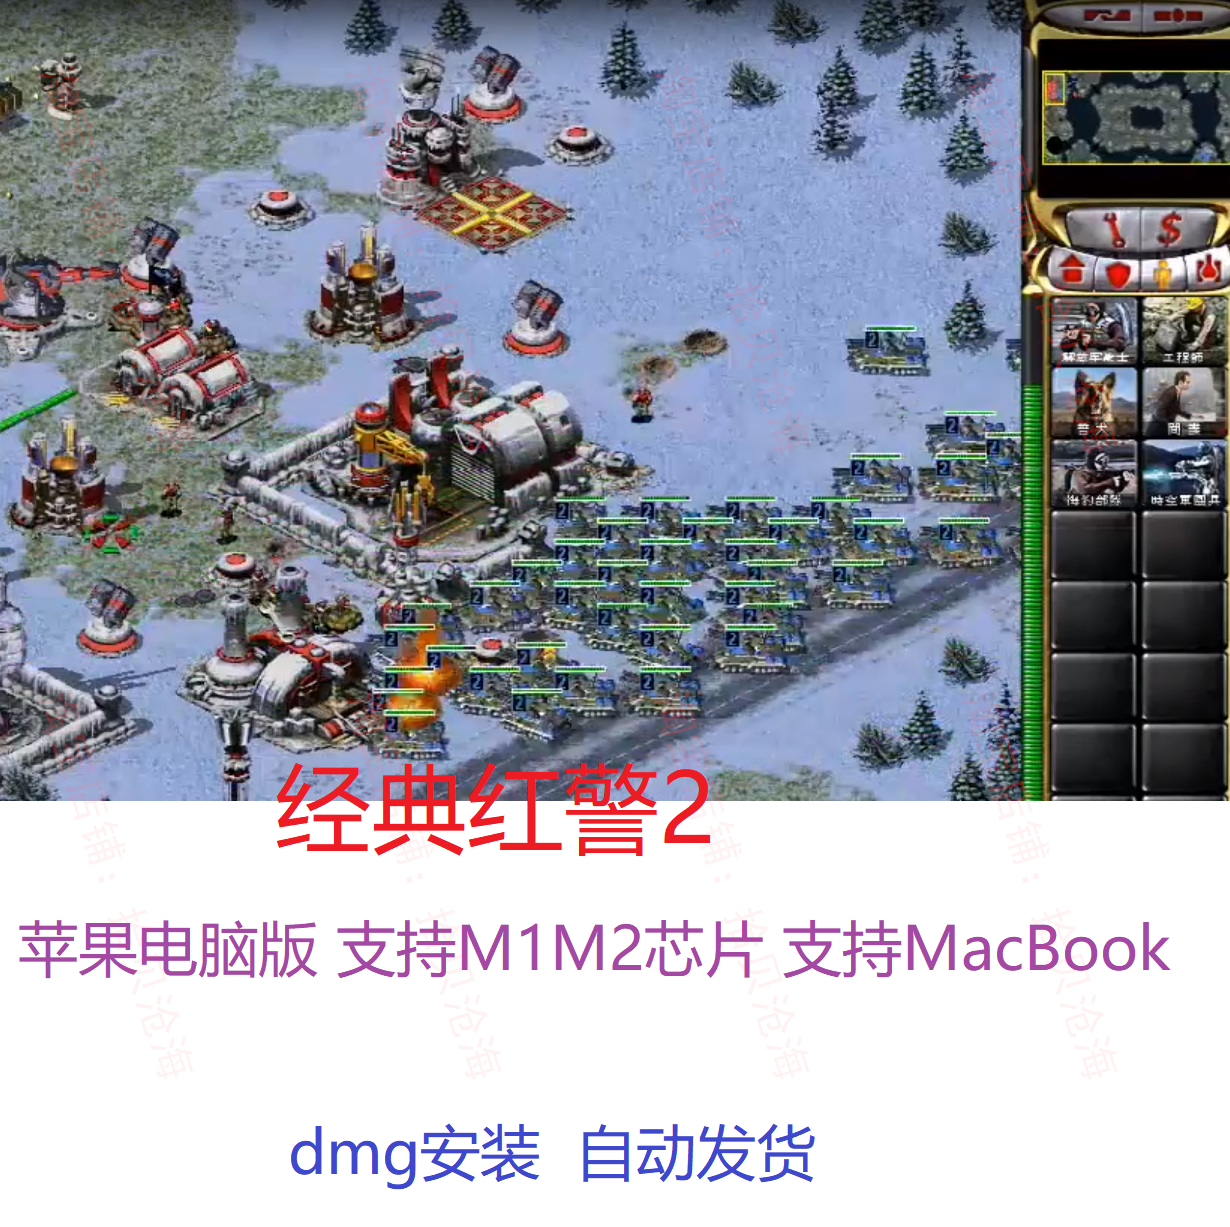 红色警戒2Mac版 红警2 苹果电脑游戏 支持M1M2M3芯片